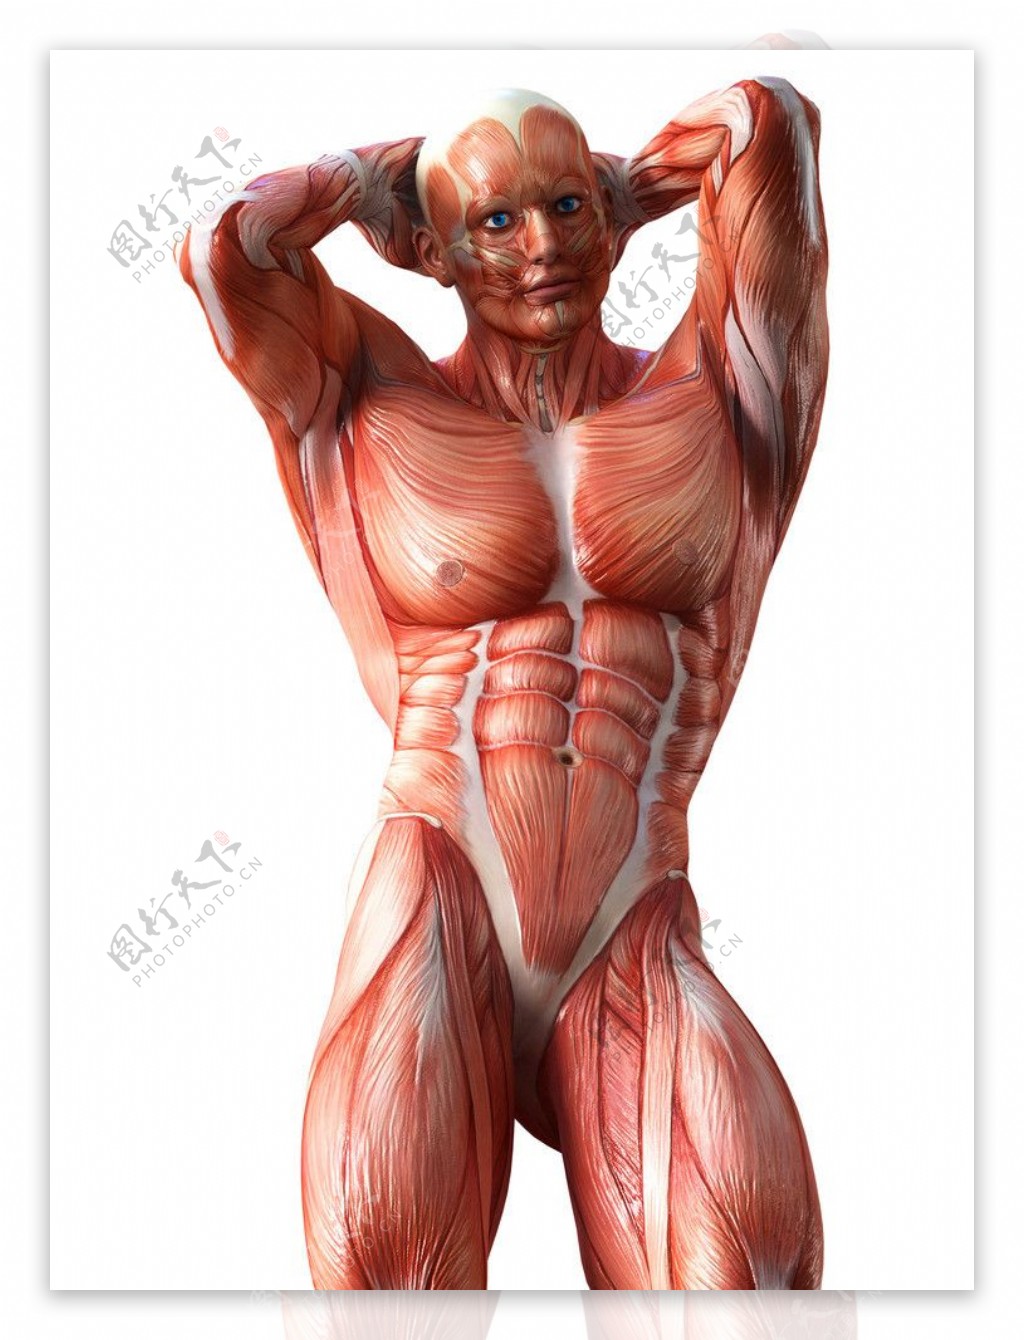 人体肌肉图片